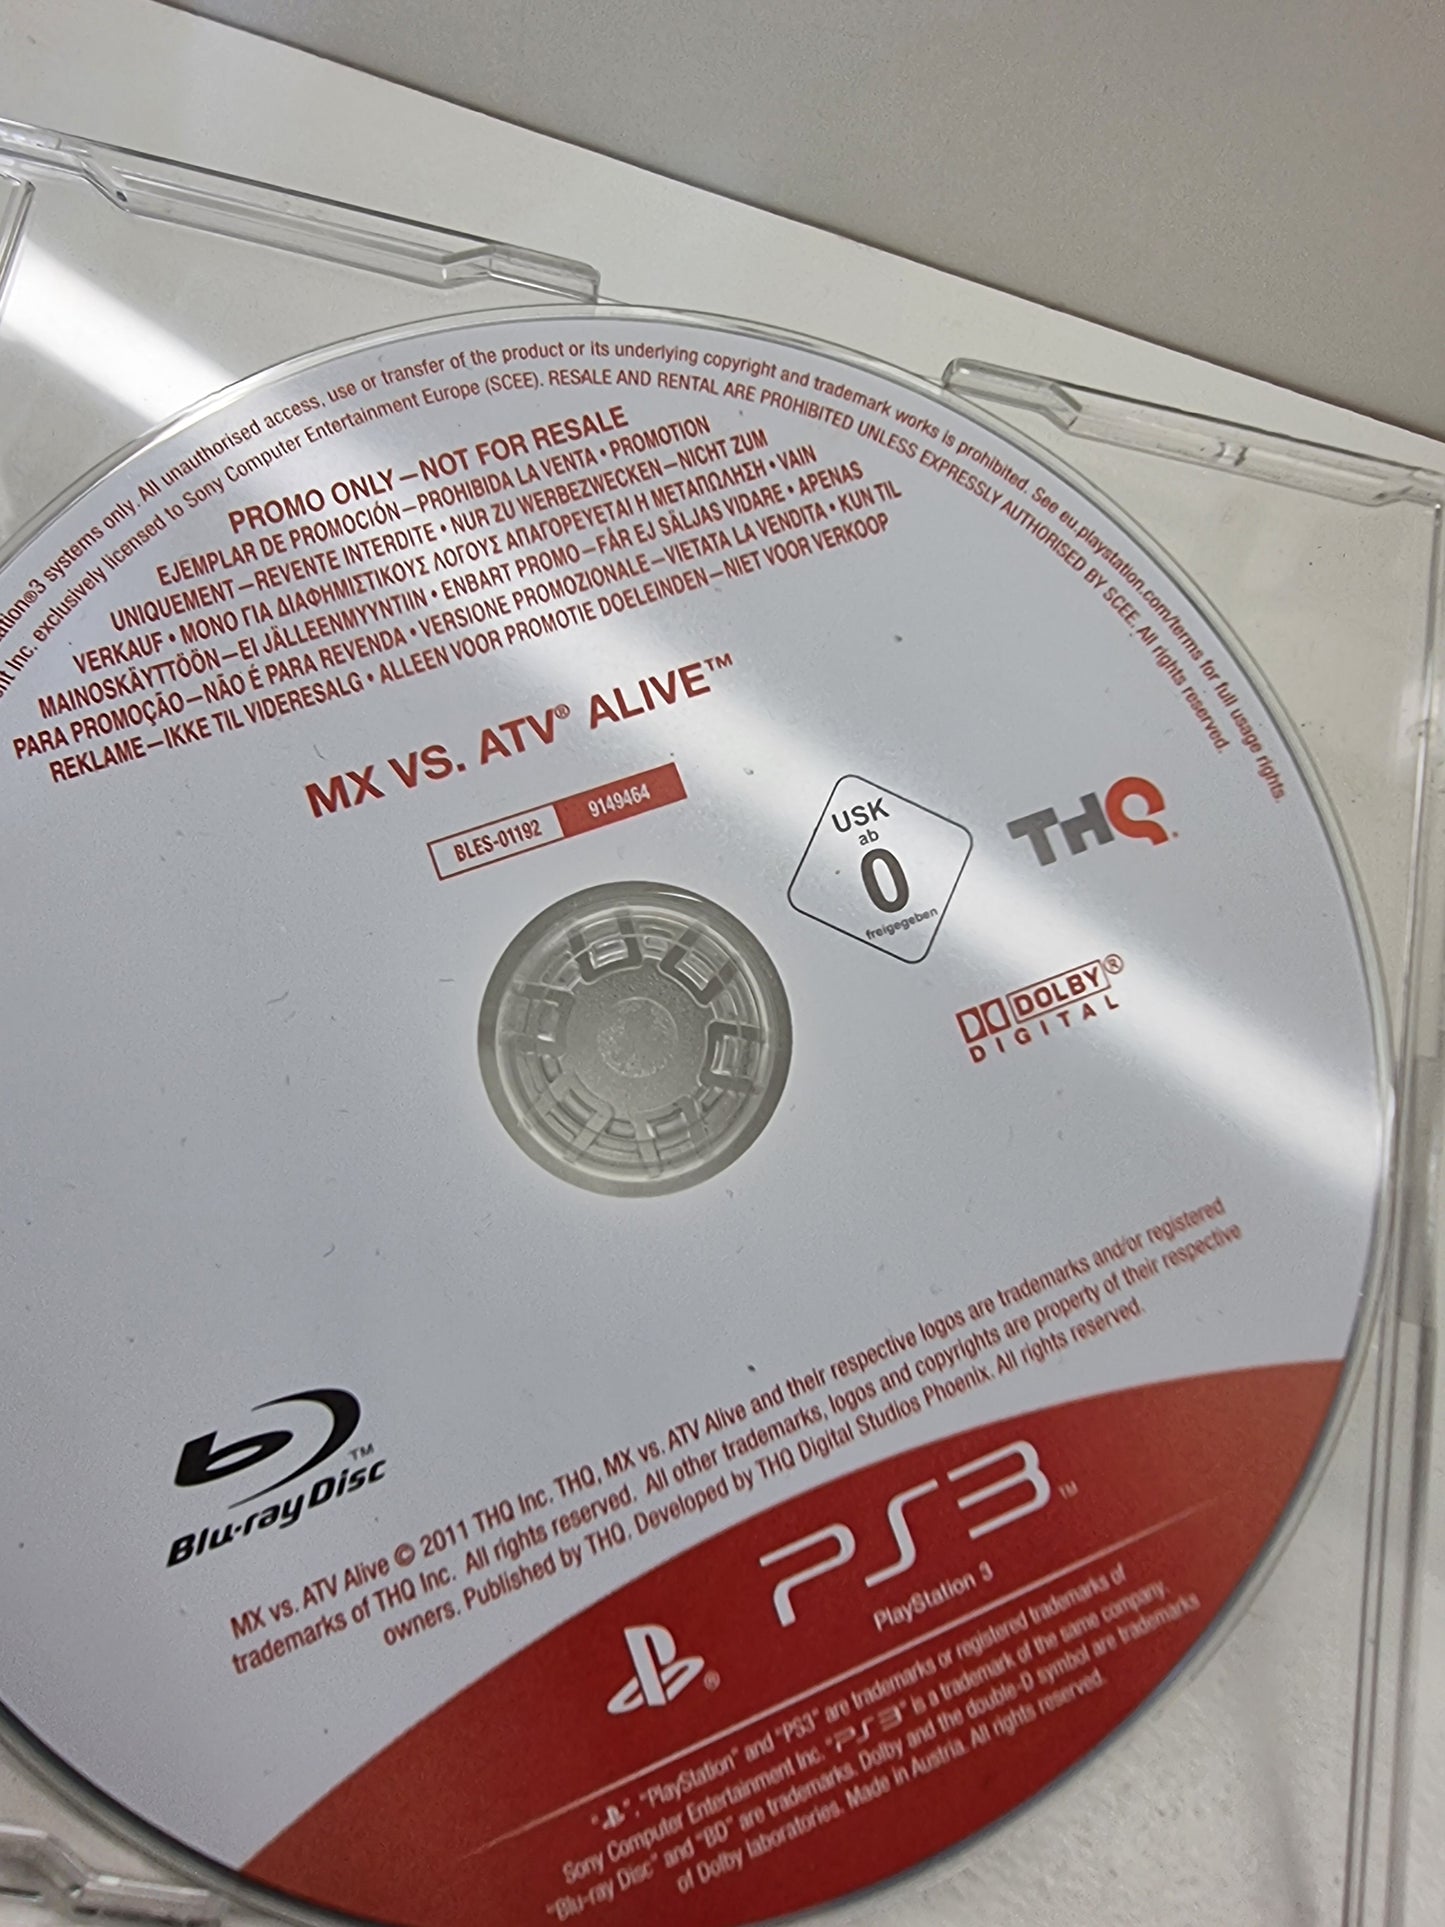 PS3  MX vs Atv Live (Promo Disc Full Game)